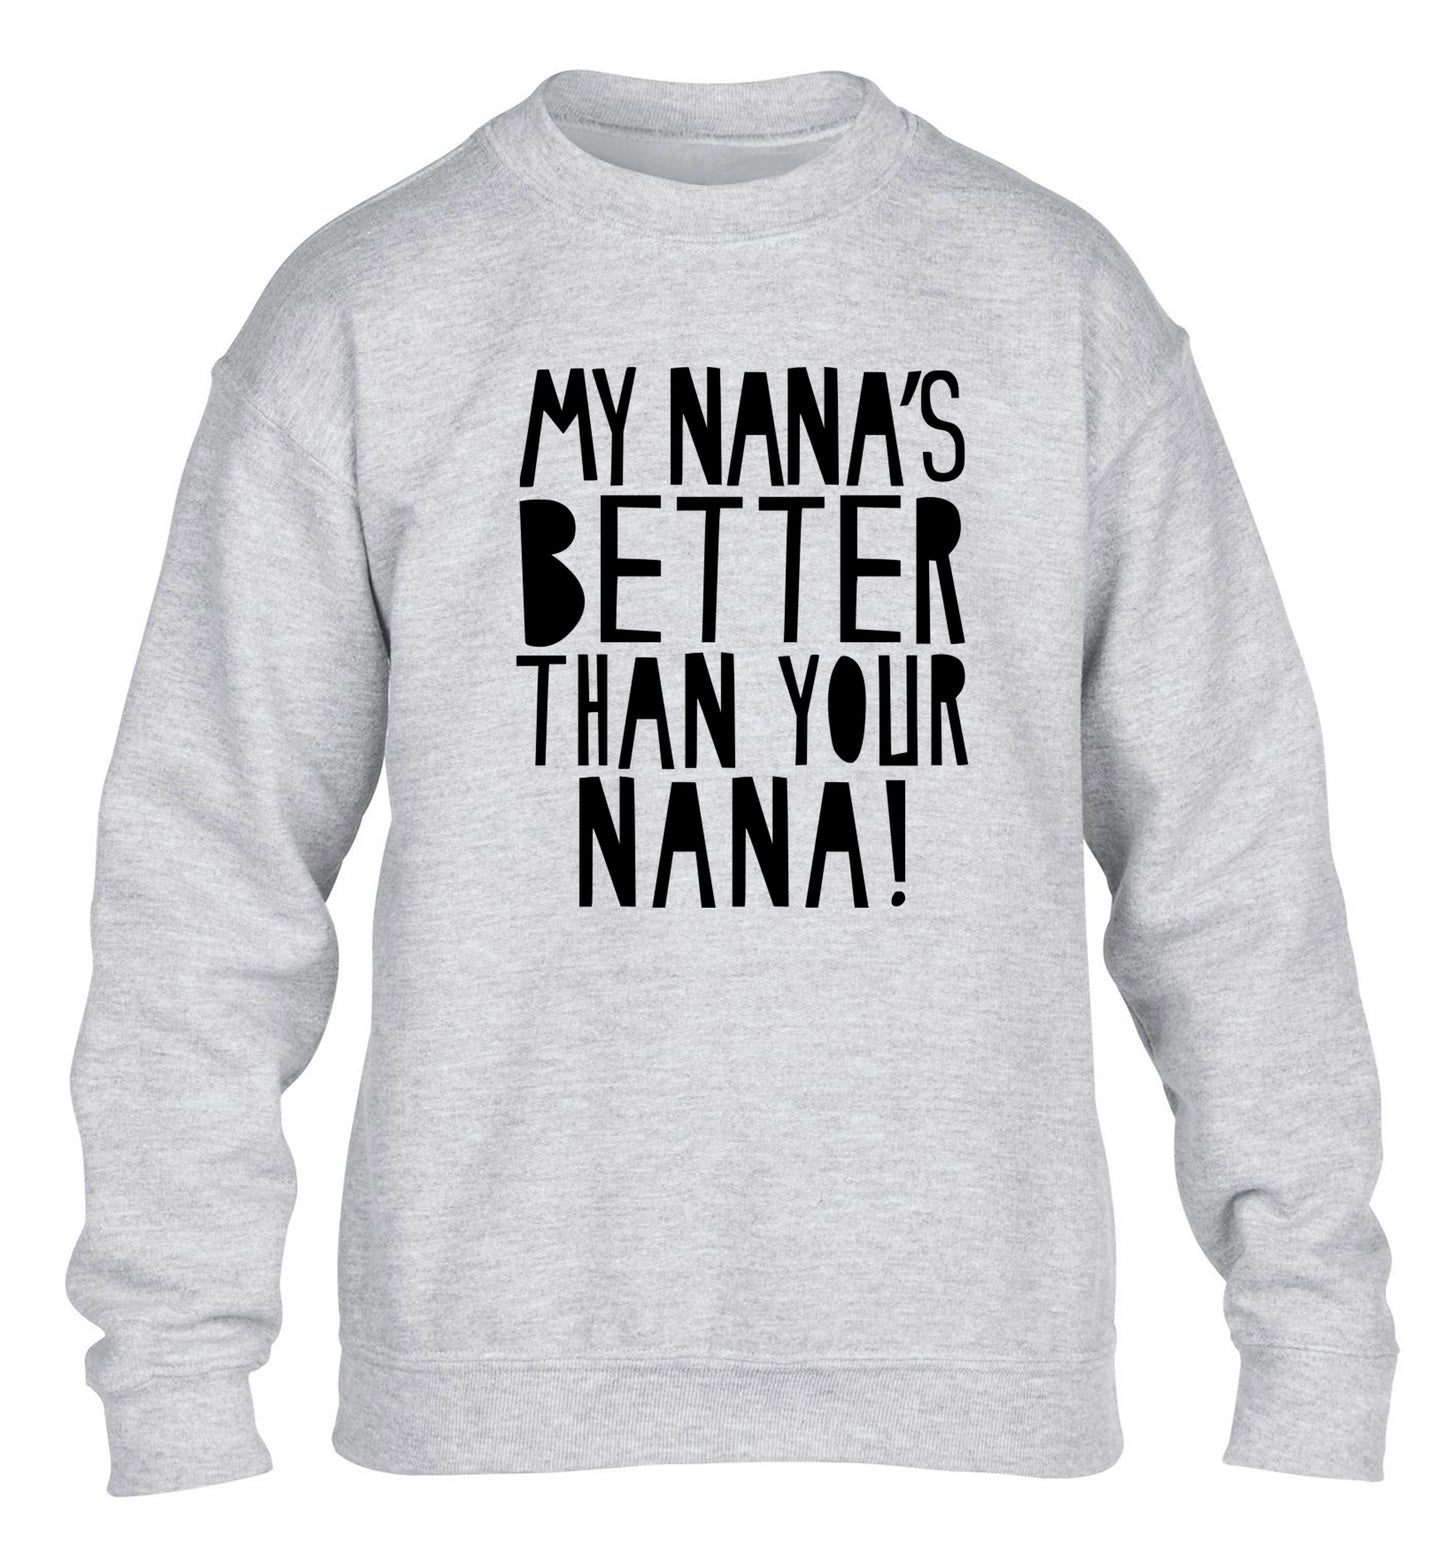 My nana's better than your nana children's grey sweater 12-13 Years